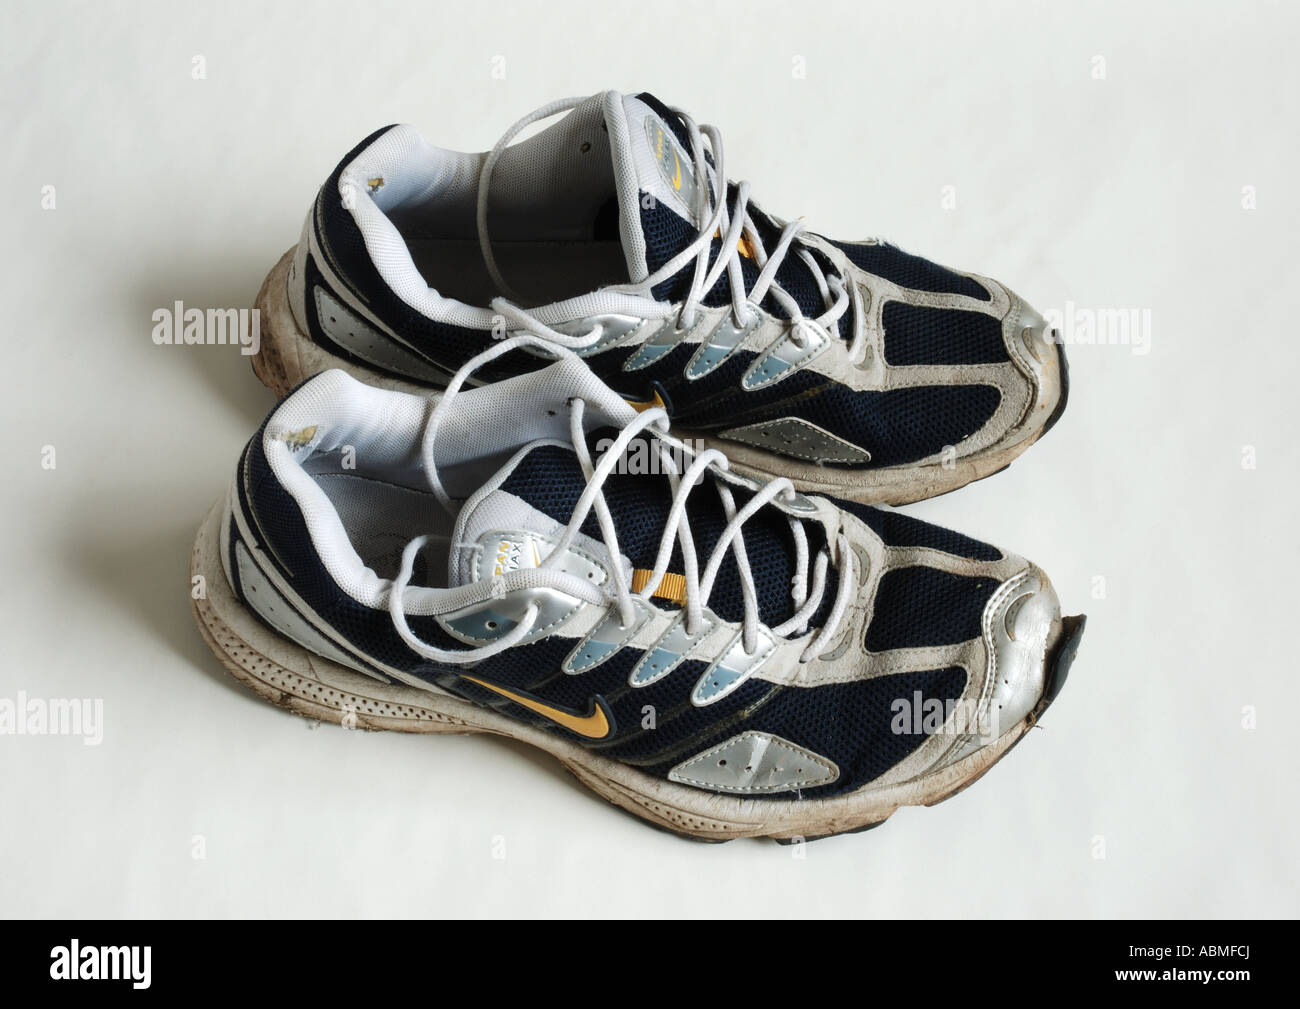 Une vieille paire de chaussures de sport Nike Photo Stock - Alamy